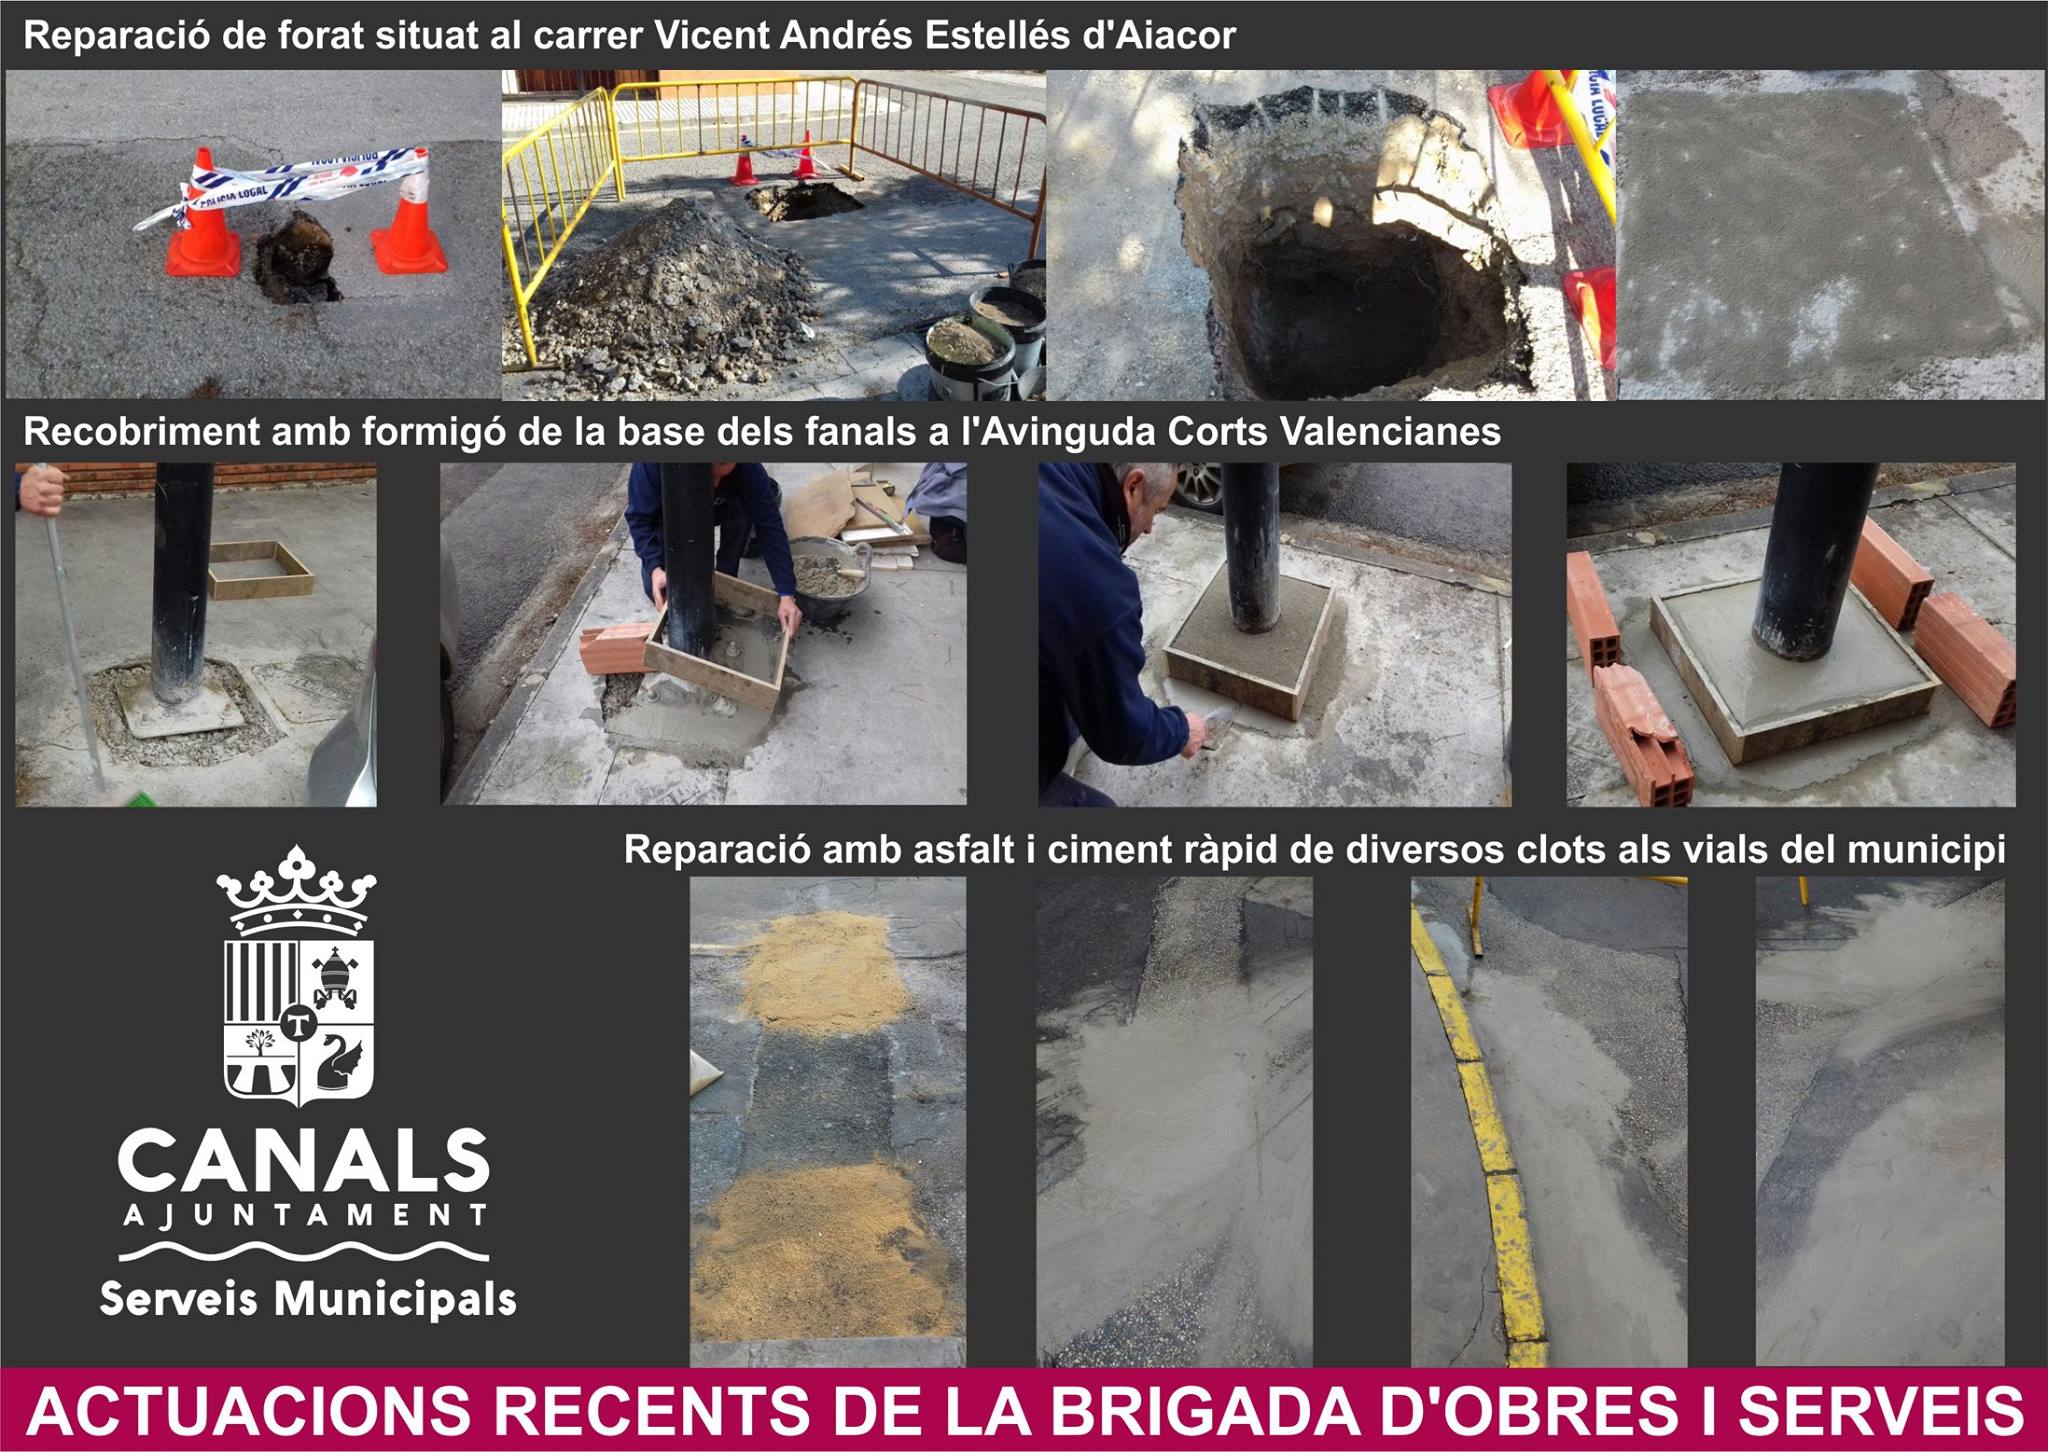 2017.02.17 Noves actuacions brigada municipal. Ajuntament de Canals.